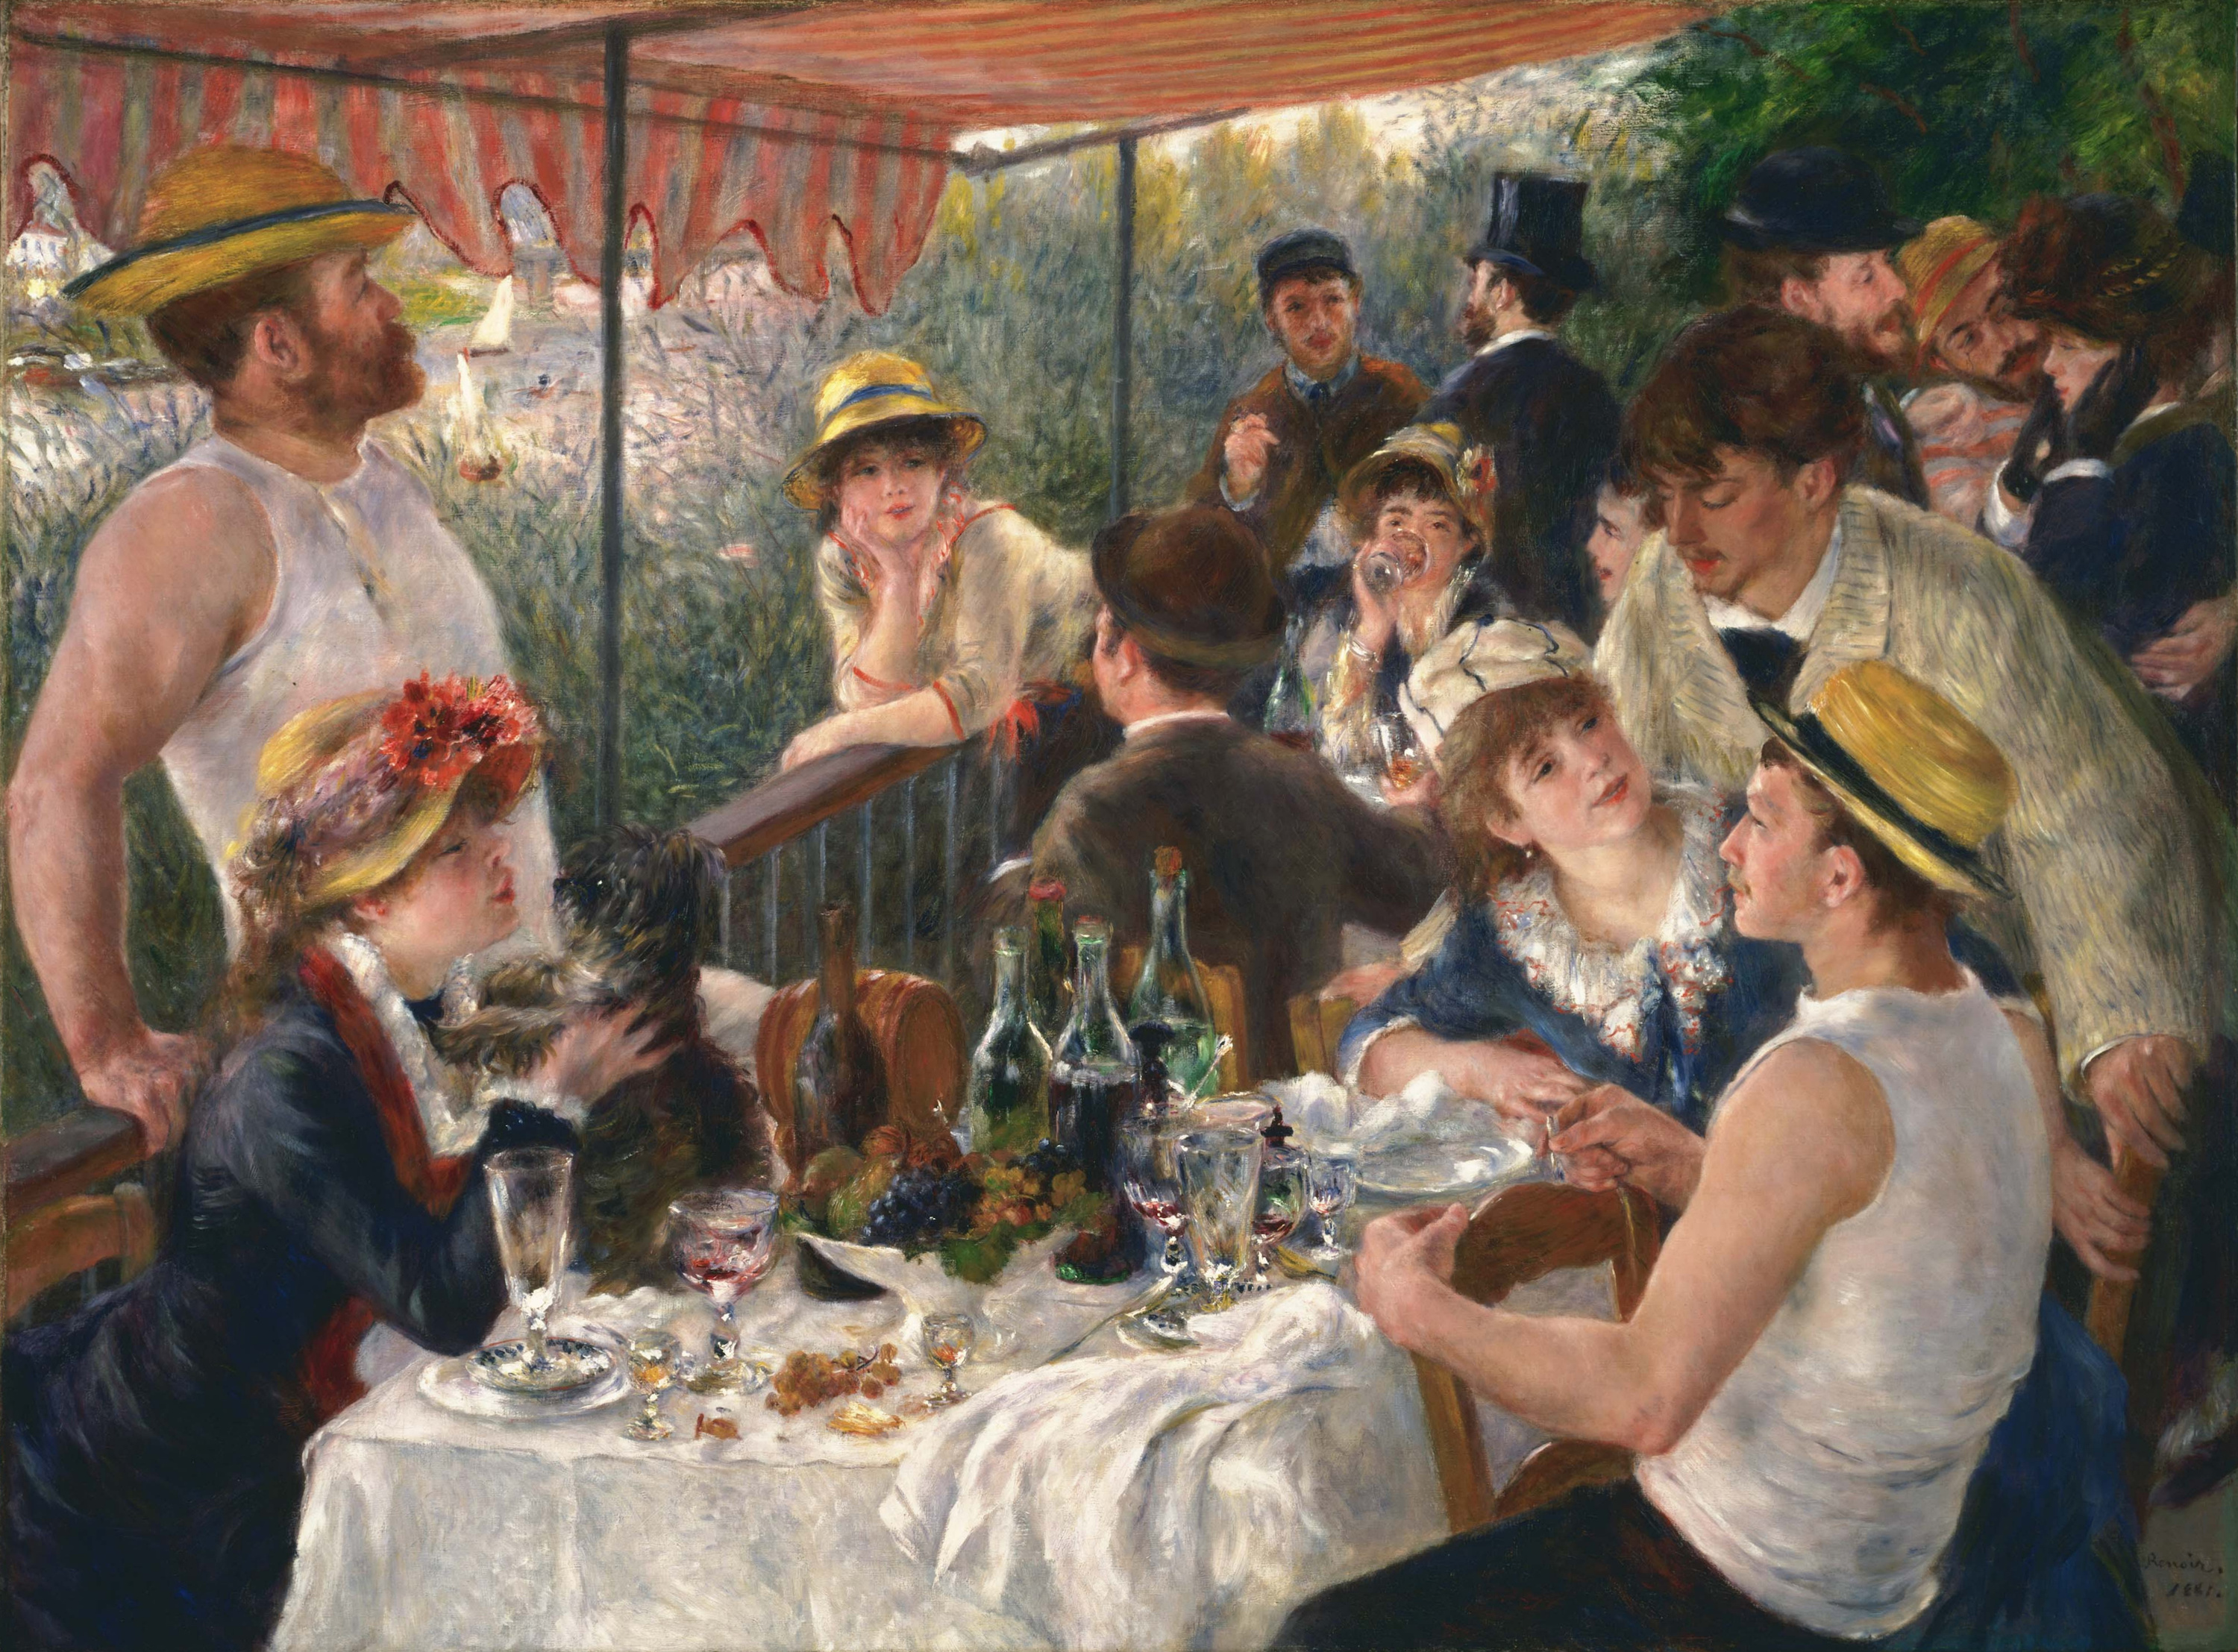 Déjeuner de la fête de la navigation de plaisance by Pierre-Auguste Renoir - 1880-1881 